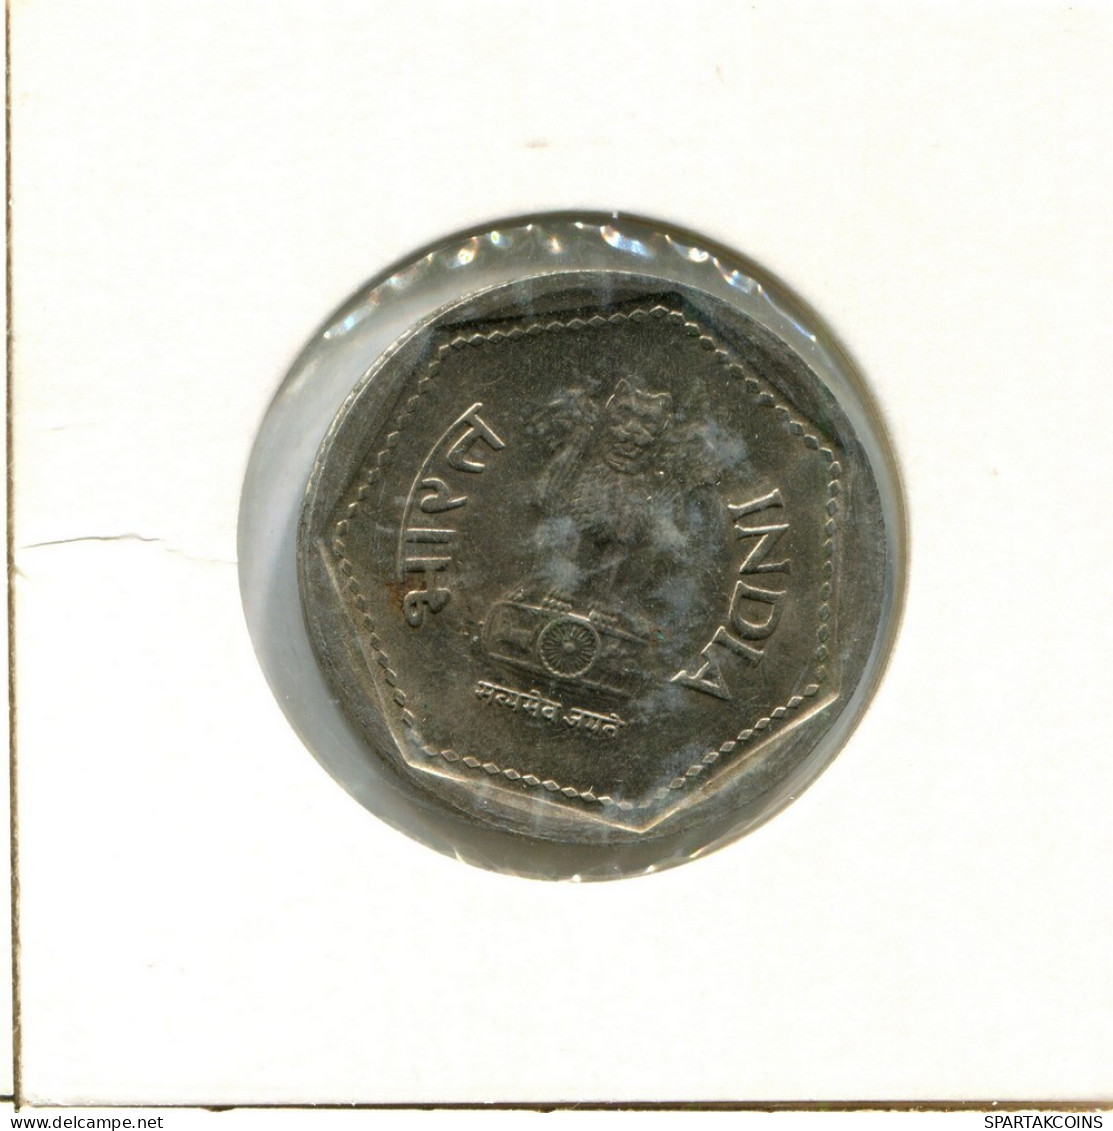 1 RUPEE 1986 INDIA Moneda #AY818.E.A - Inde